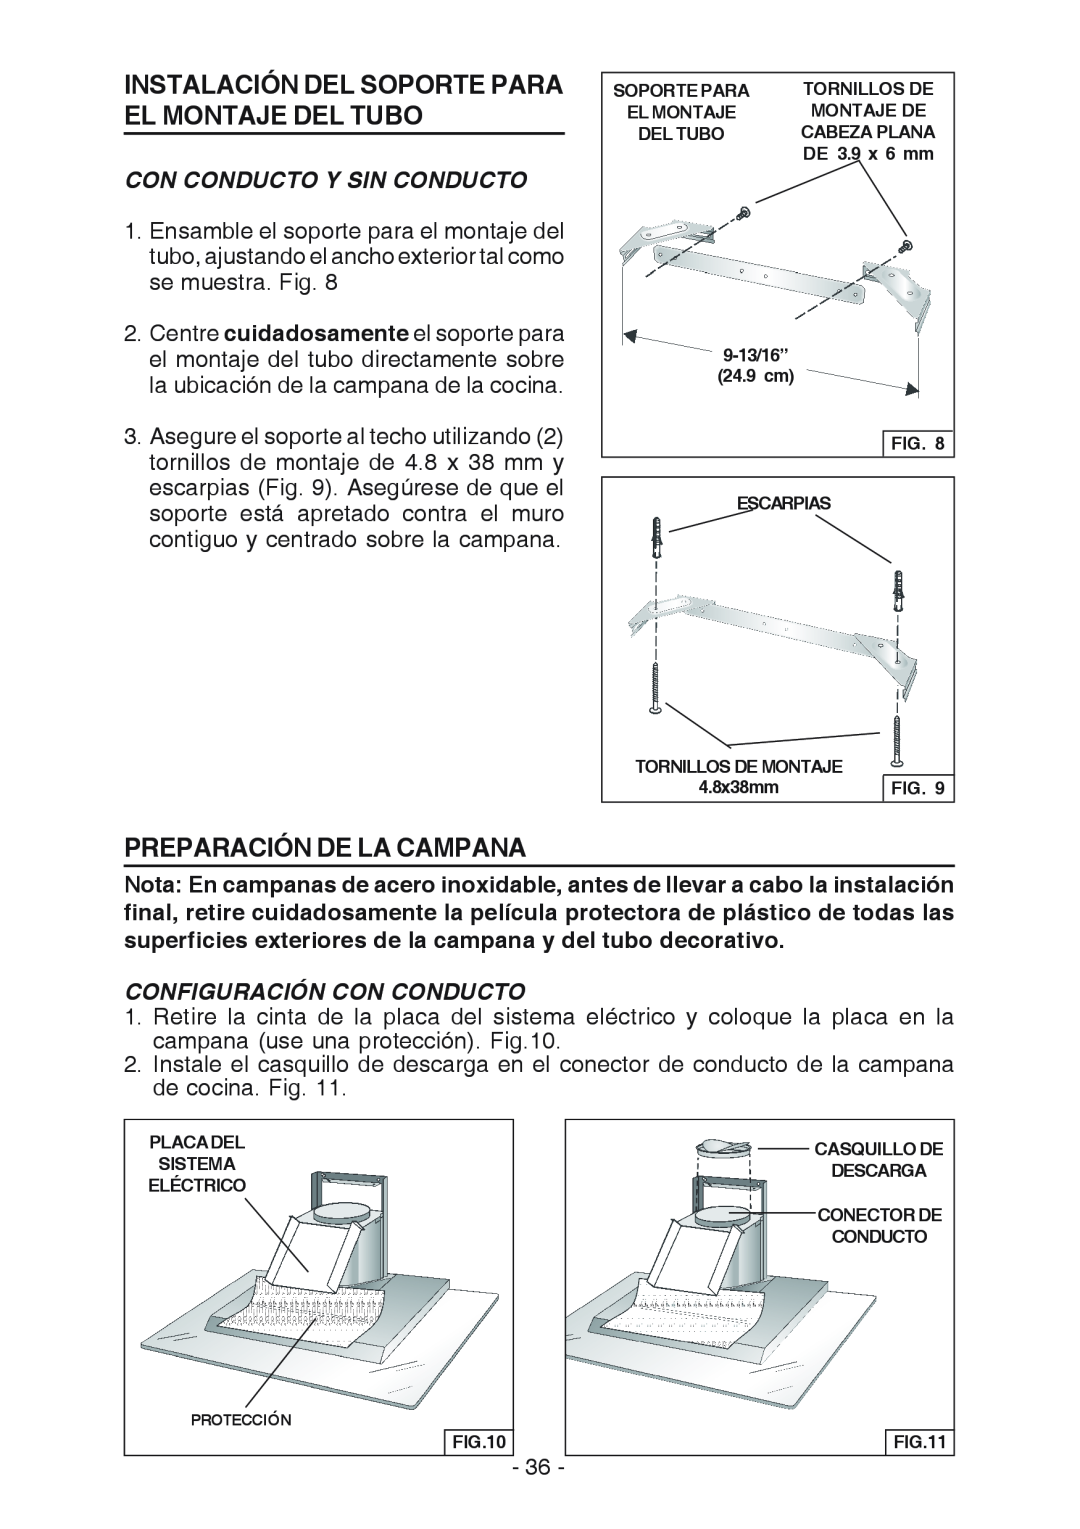 Broan WC26I manual Configuración Con Conducto, Instalación Del Soporte Para El Montaje Del Tubo, Preparación De La Campana 